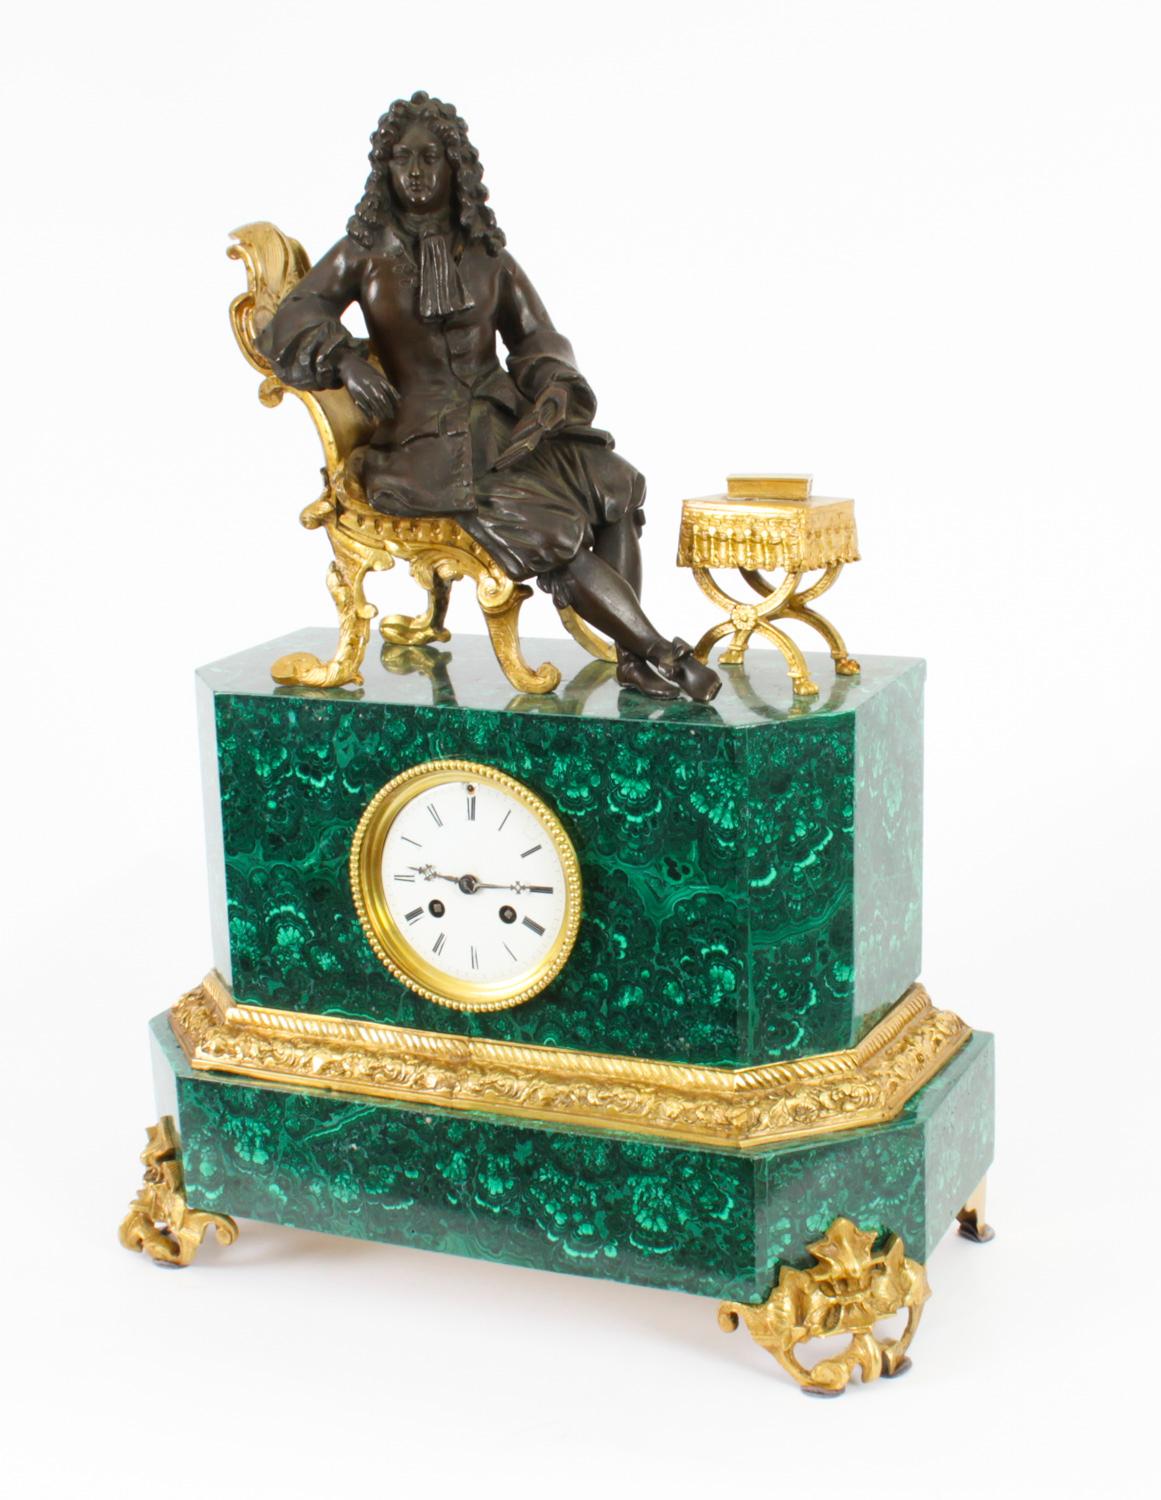 Dies ist eine hervorragende Qualität antiken Französisch Malachit, Bronze und Ormolu Kaminsims Uhr aus CIRCA 1850 in Datum.

Es zeigt Ludwig XVI. auf einem Thronsessel aus Ormolu sitzend, während er ein Buch liest.

Der Name des Uhrmachers ist